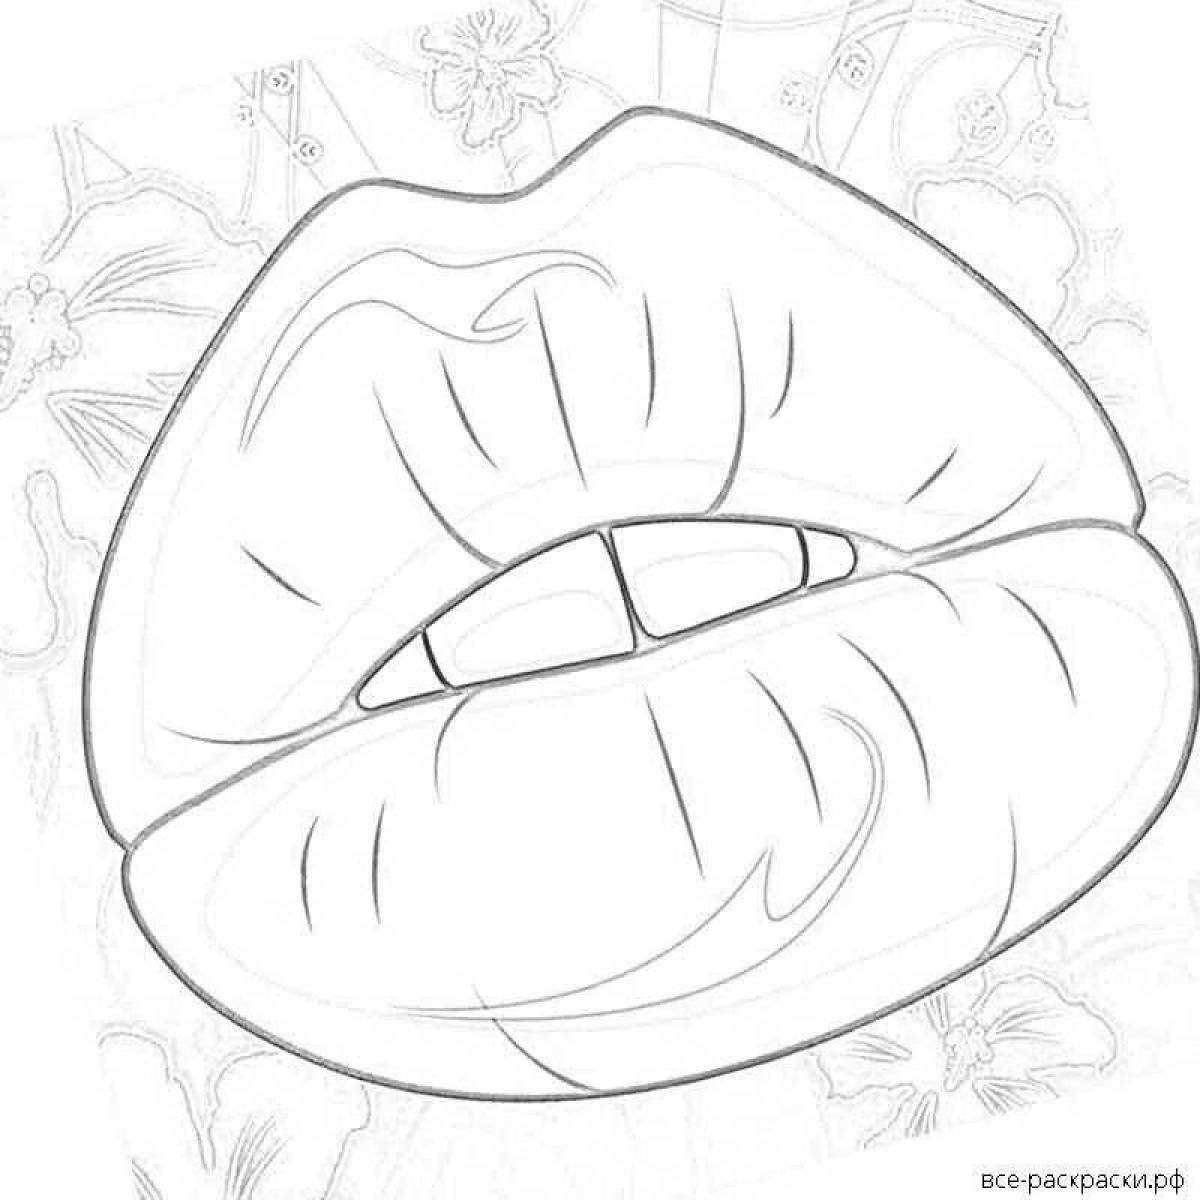 Веселый рисунок губ